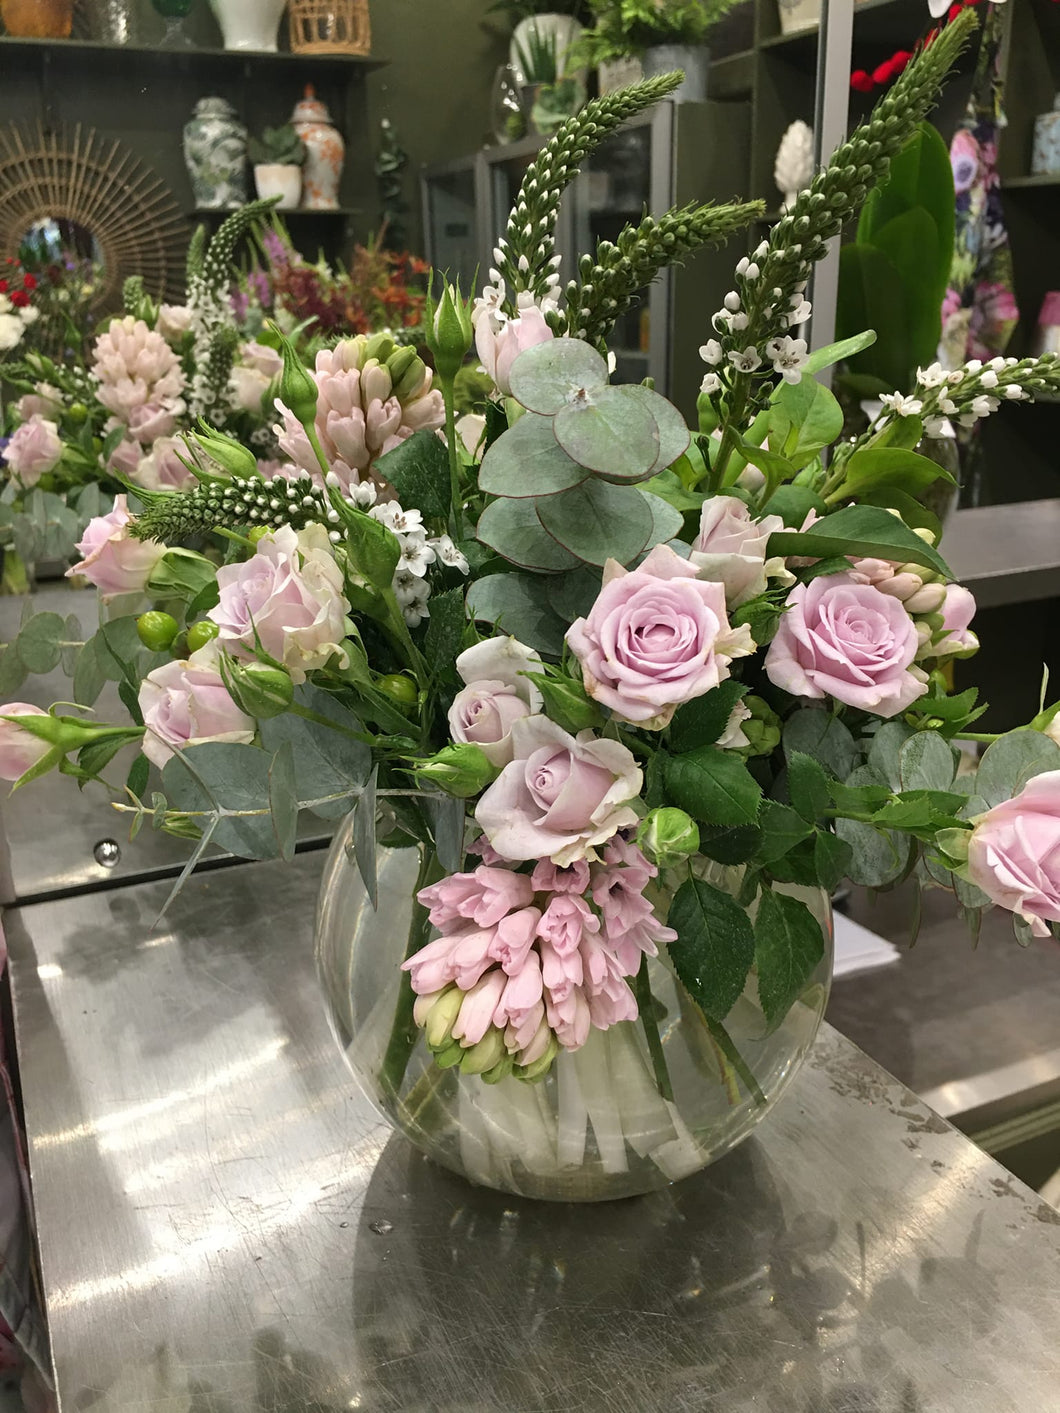 Seasonal Vase of Flowers